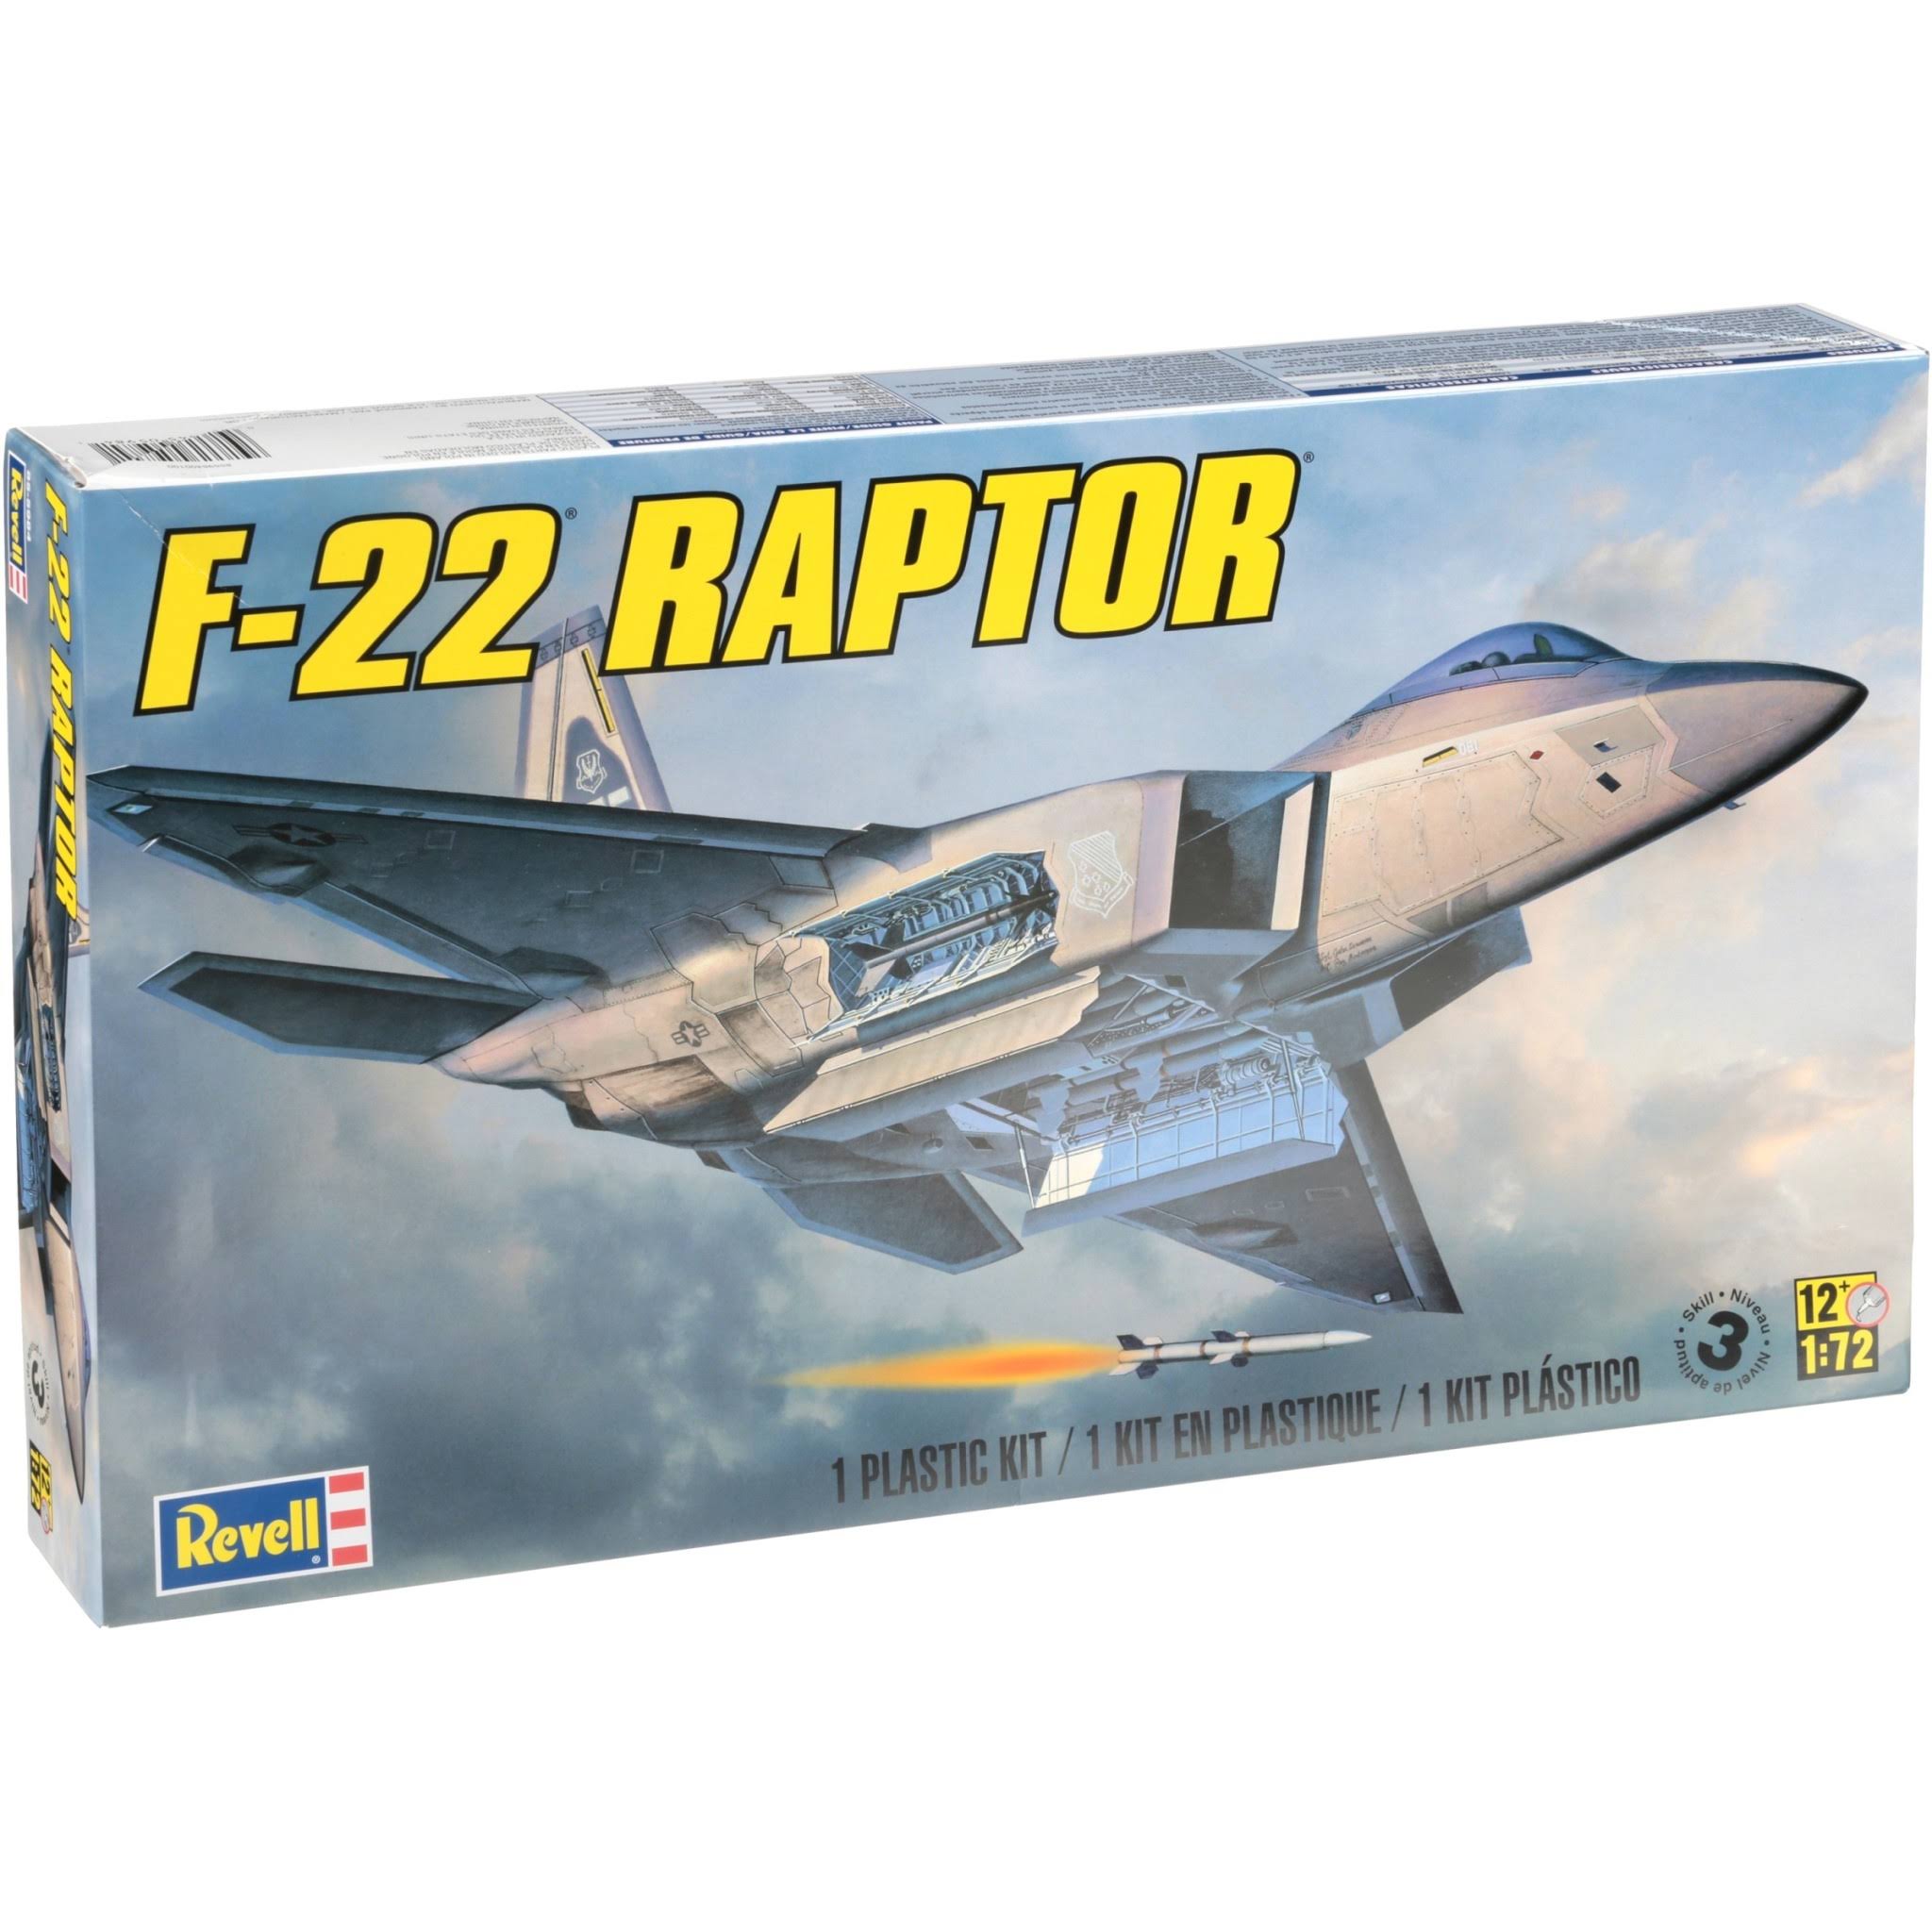 Revell 1/72 F-22 Raptor Model Airplane Kit